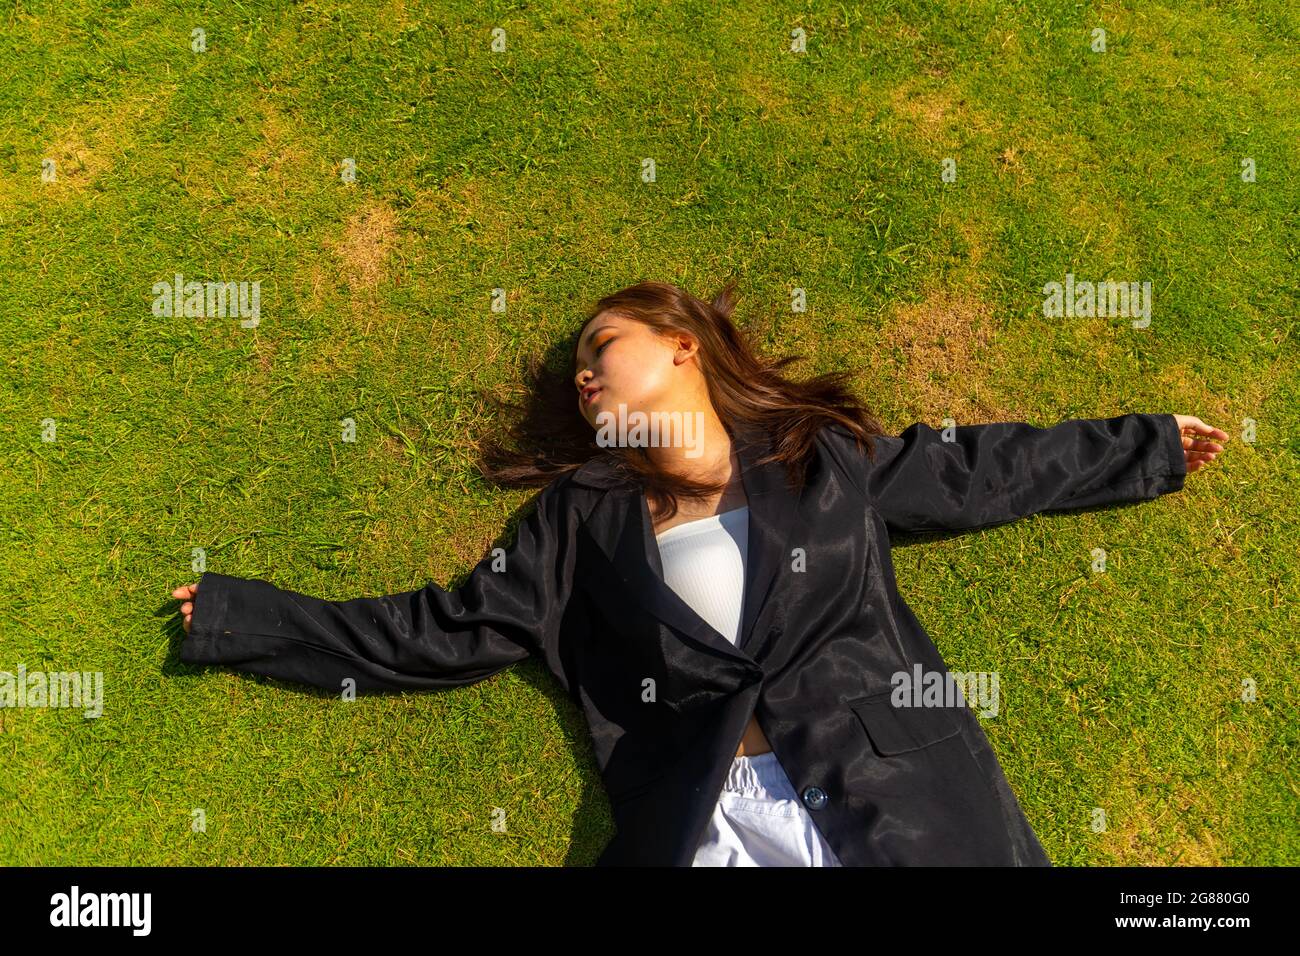 Une jolie femme d'Asie du Sud portant un manteau habillé noir couché sur le sol Banque D'Images